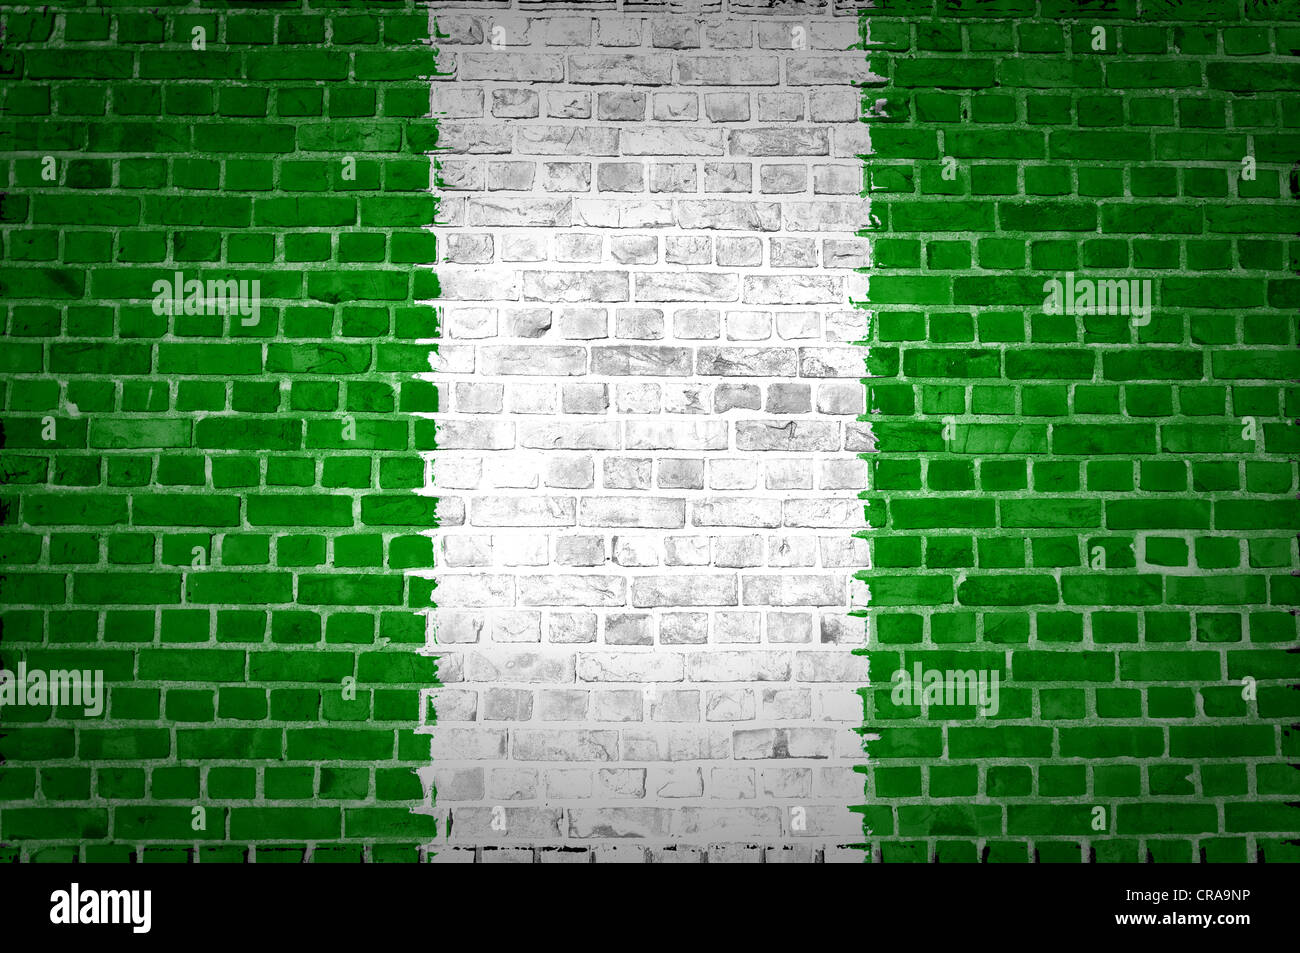 Ein Bild von der Nigeria-Flagge gemalt auf eine Mauer in innerstädtischer Lage Stockfoto